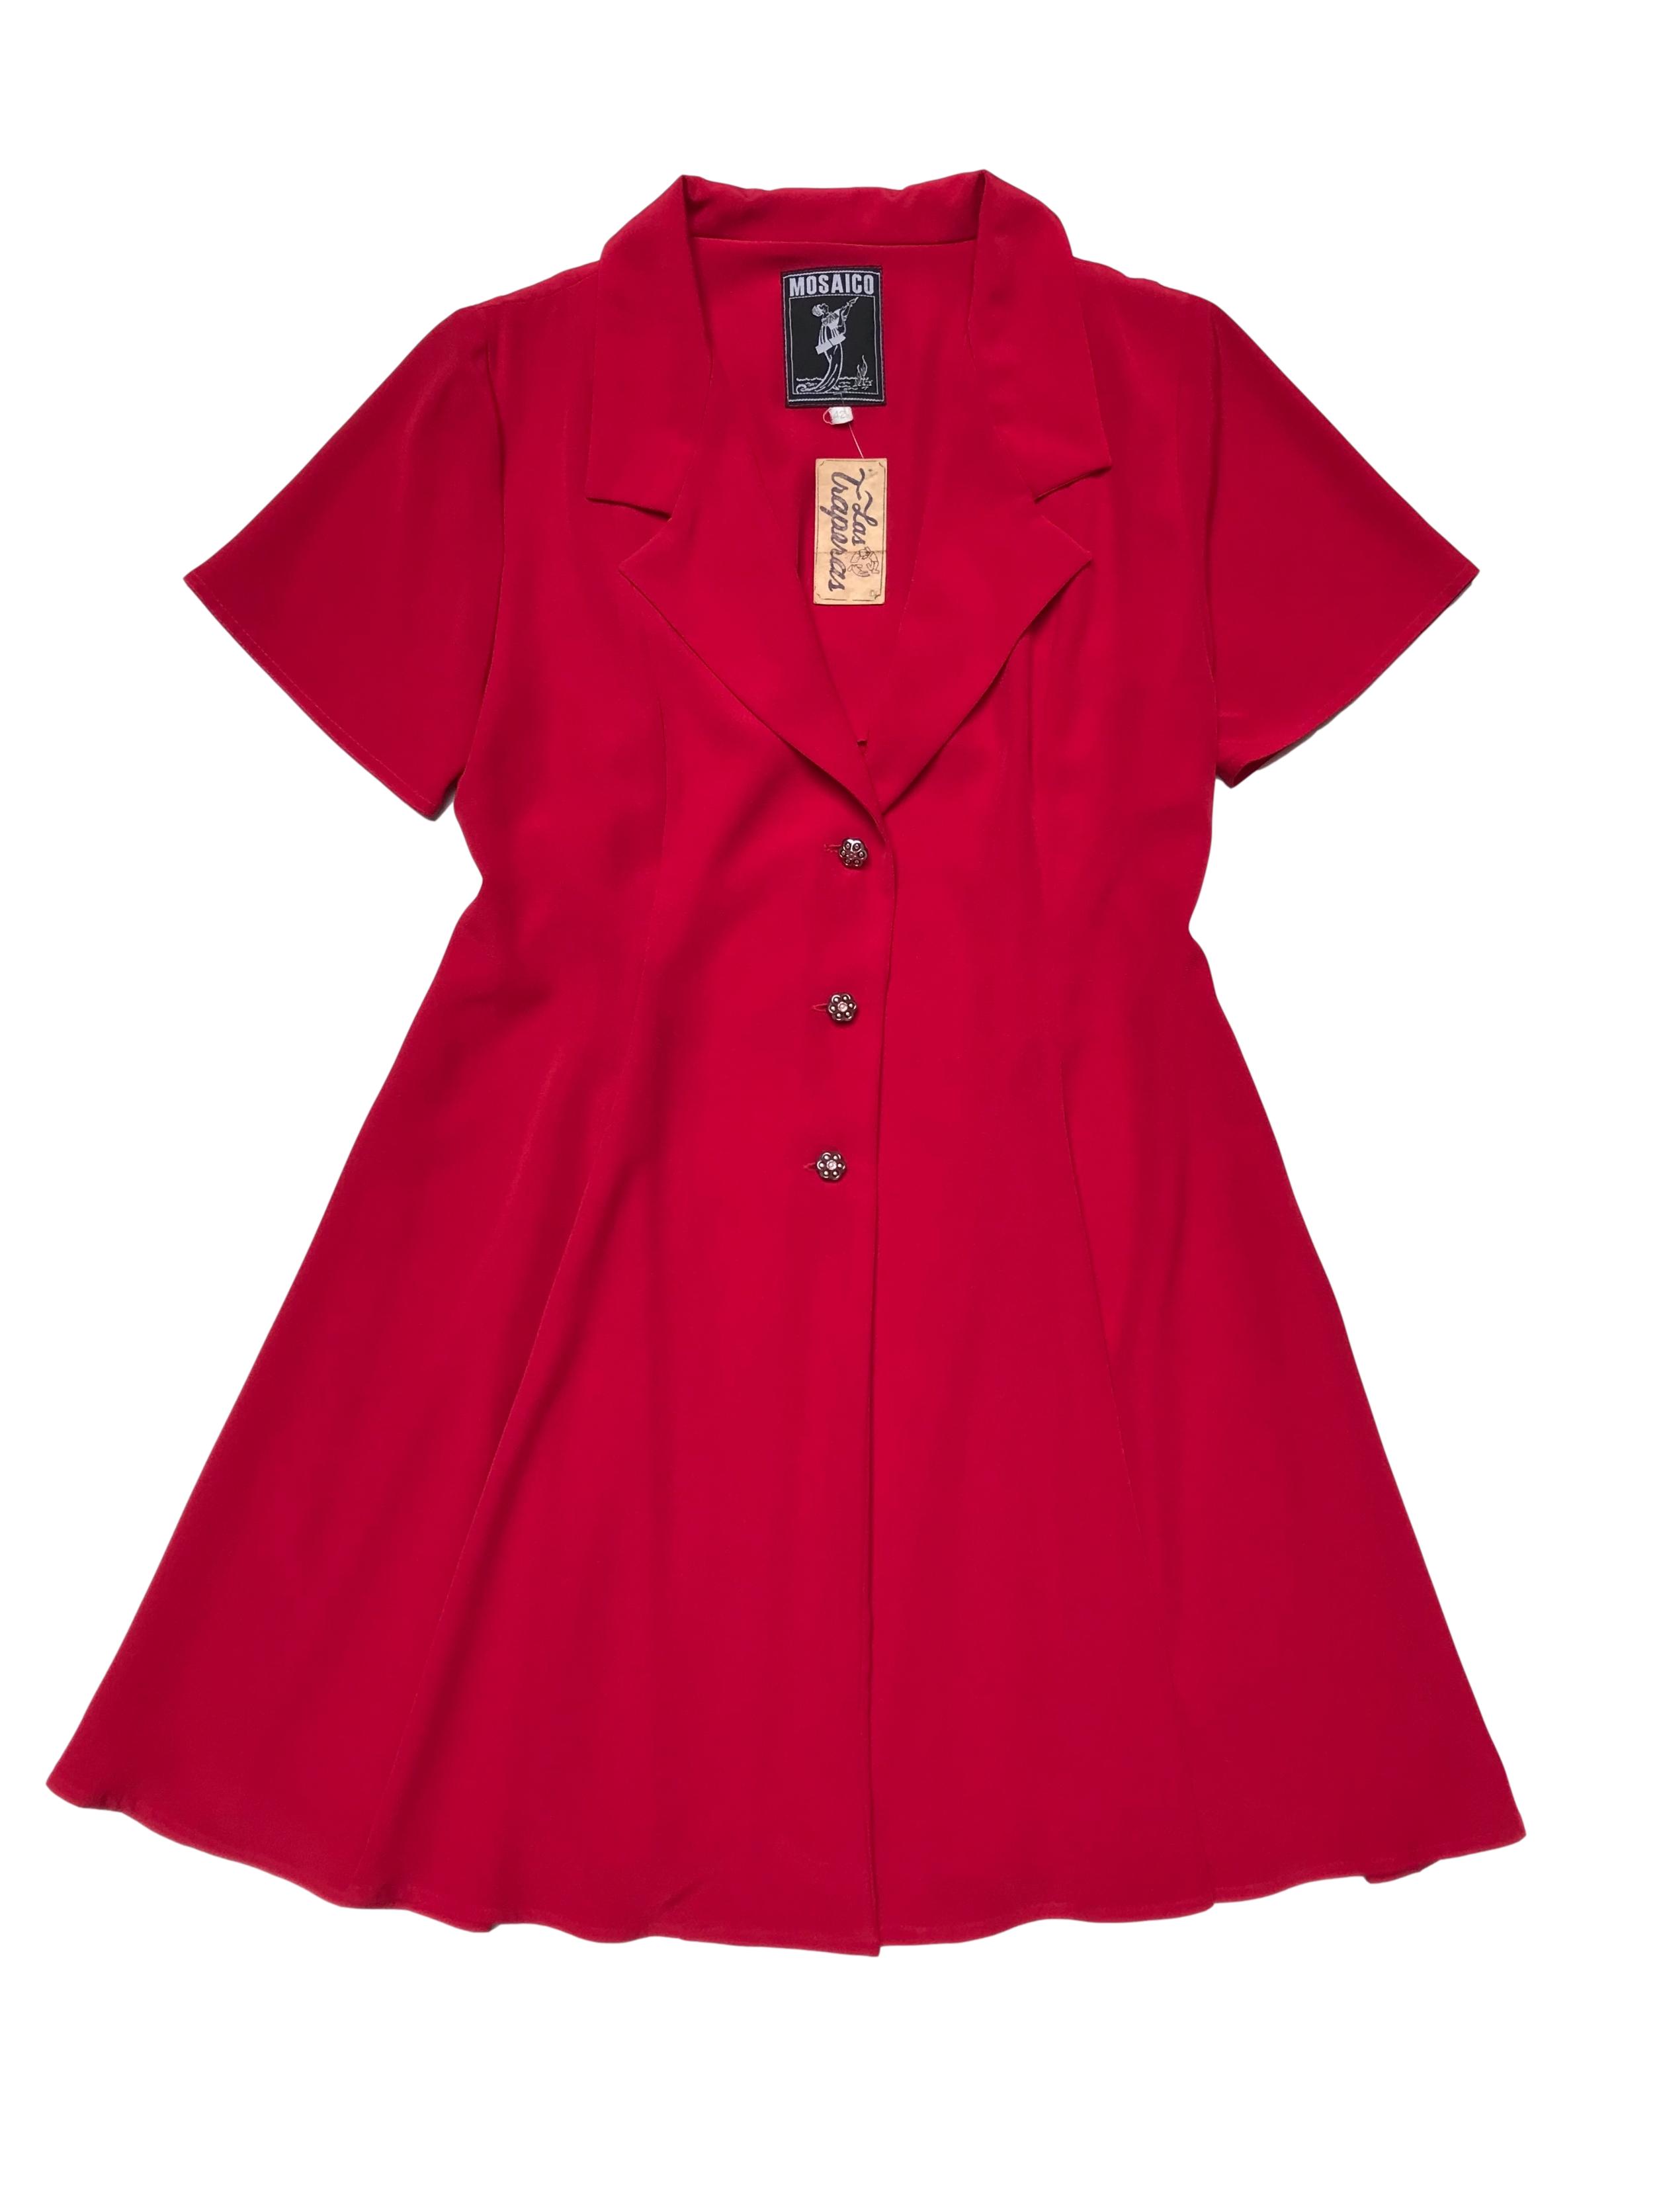 Blazer vintage rojo de tela fluida, corte campana con cuelo y tres botones joya al centro. Tiene falda conjunto. Busto 94cm Largo 82cm 